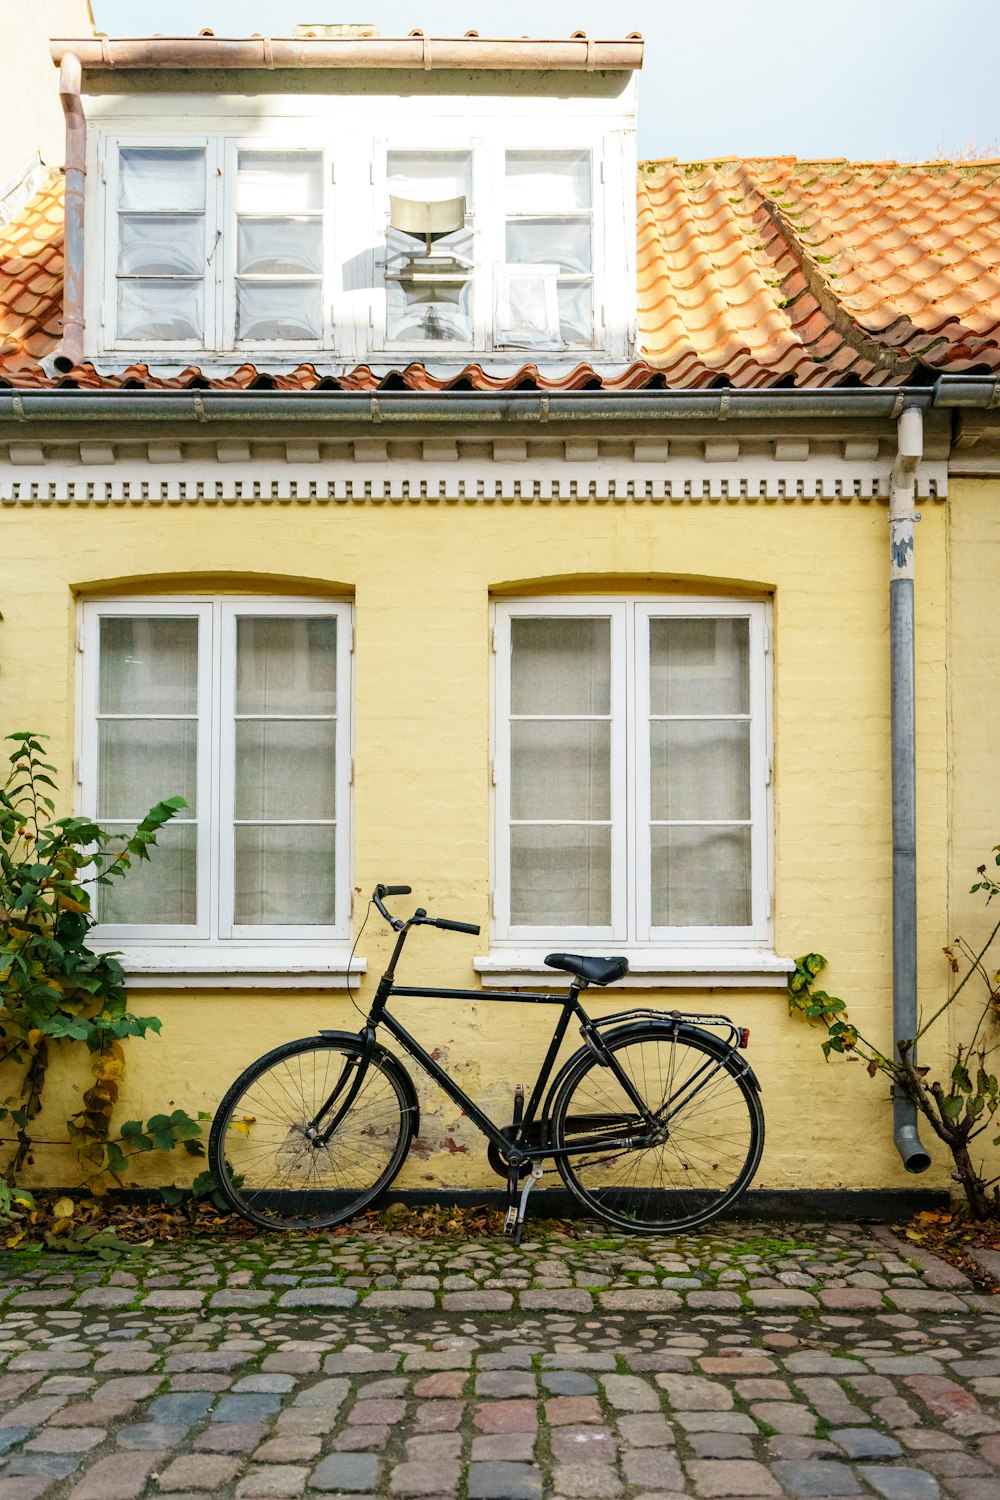 Vélo noir garé à côté d’une maison peinte en jaune